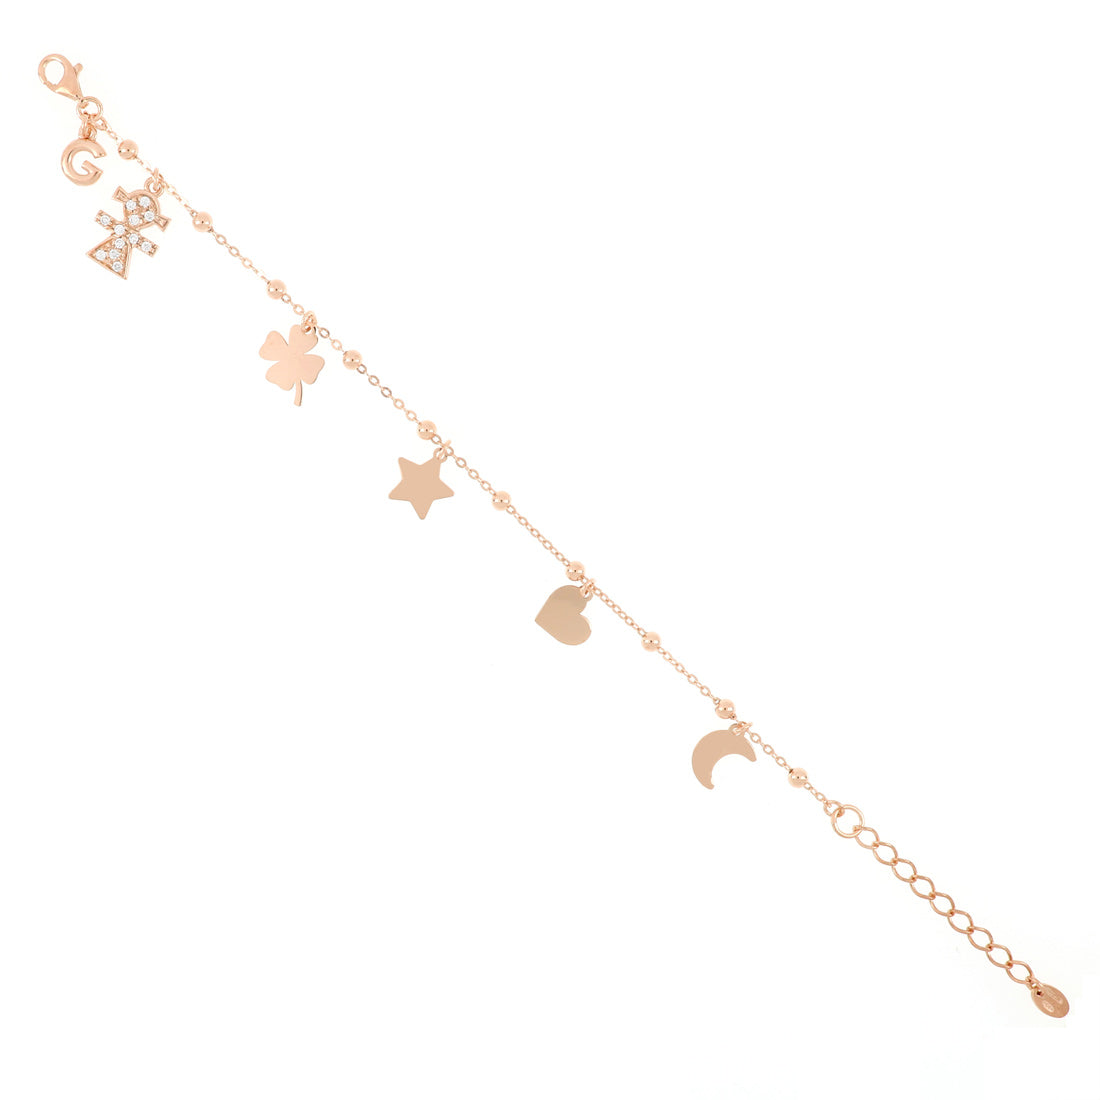 Bracciale oro rosa con pendente bambina e simboli quadrifoglio, stella, cuore, luna